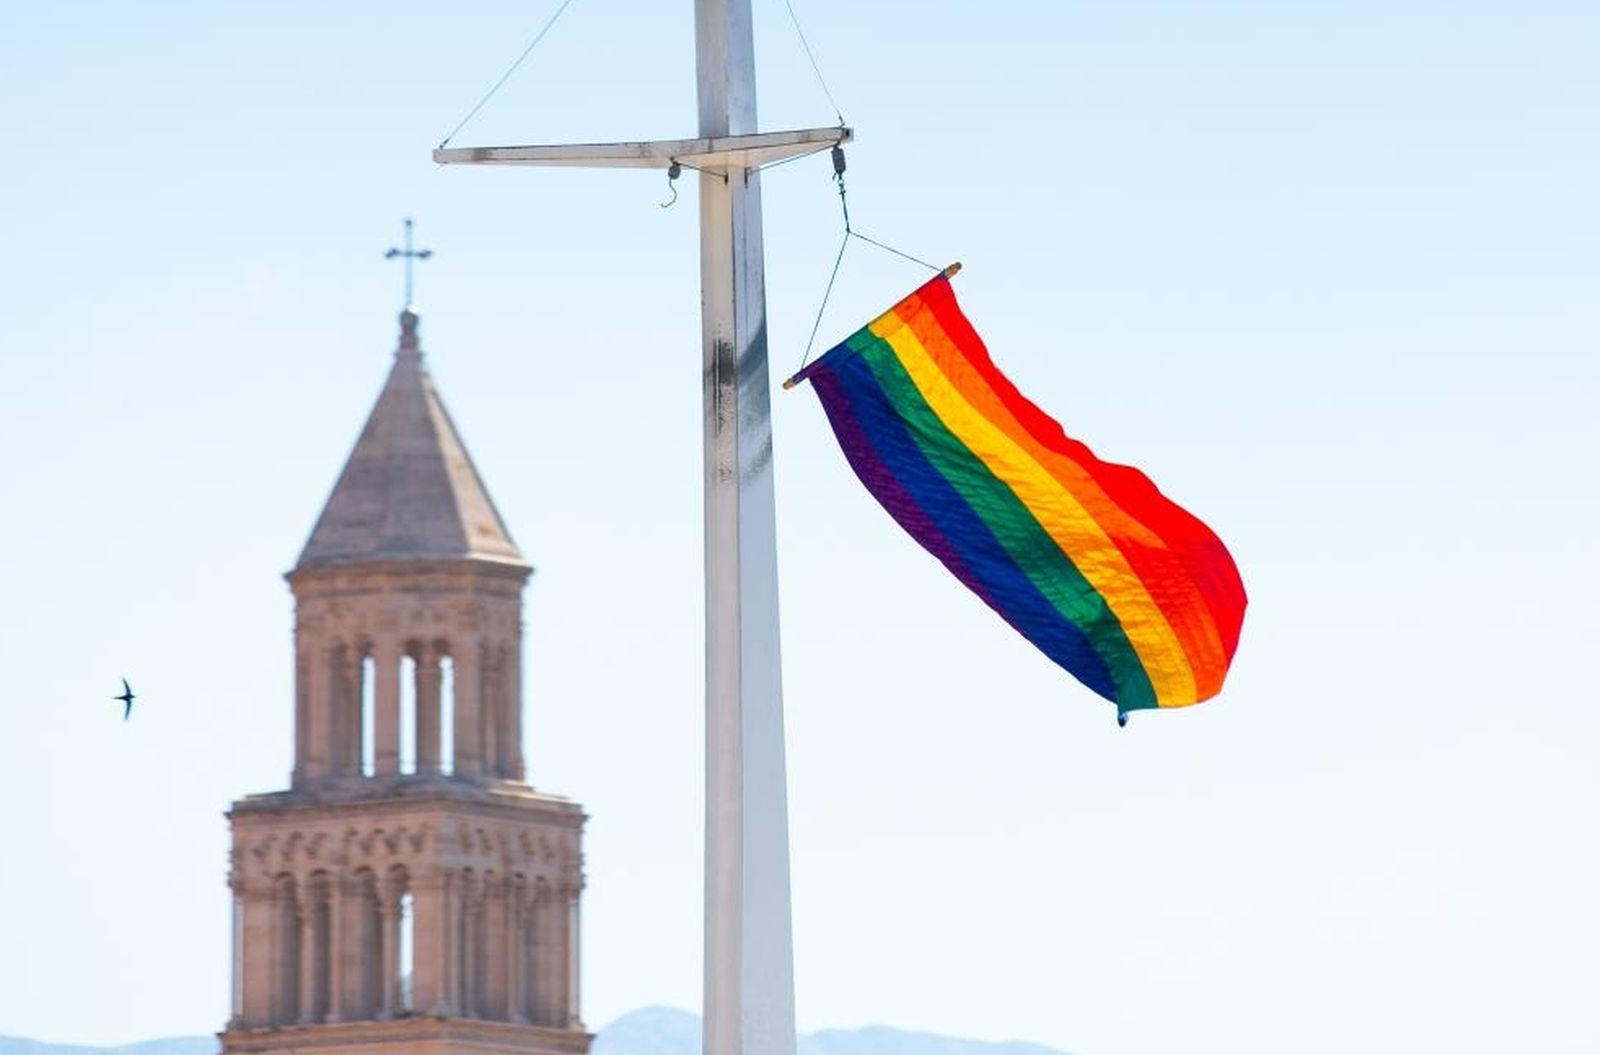 14.06.2021., Split - Pripadnici LGBT zajednice u Splitu jutros su na Matejuski podigli zastavu duginih boja.
Photo: Milan Sabic/PIXSELL